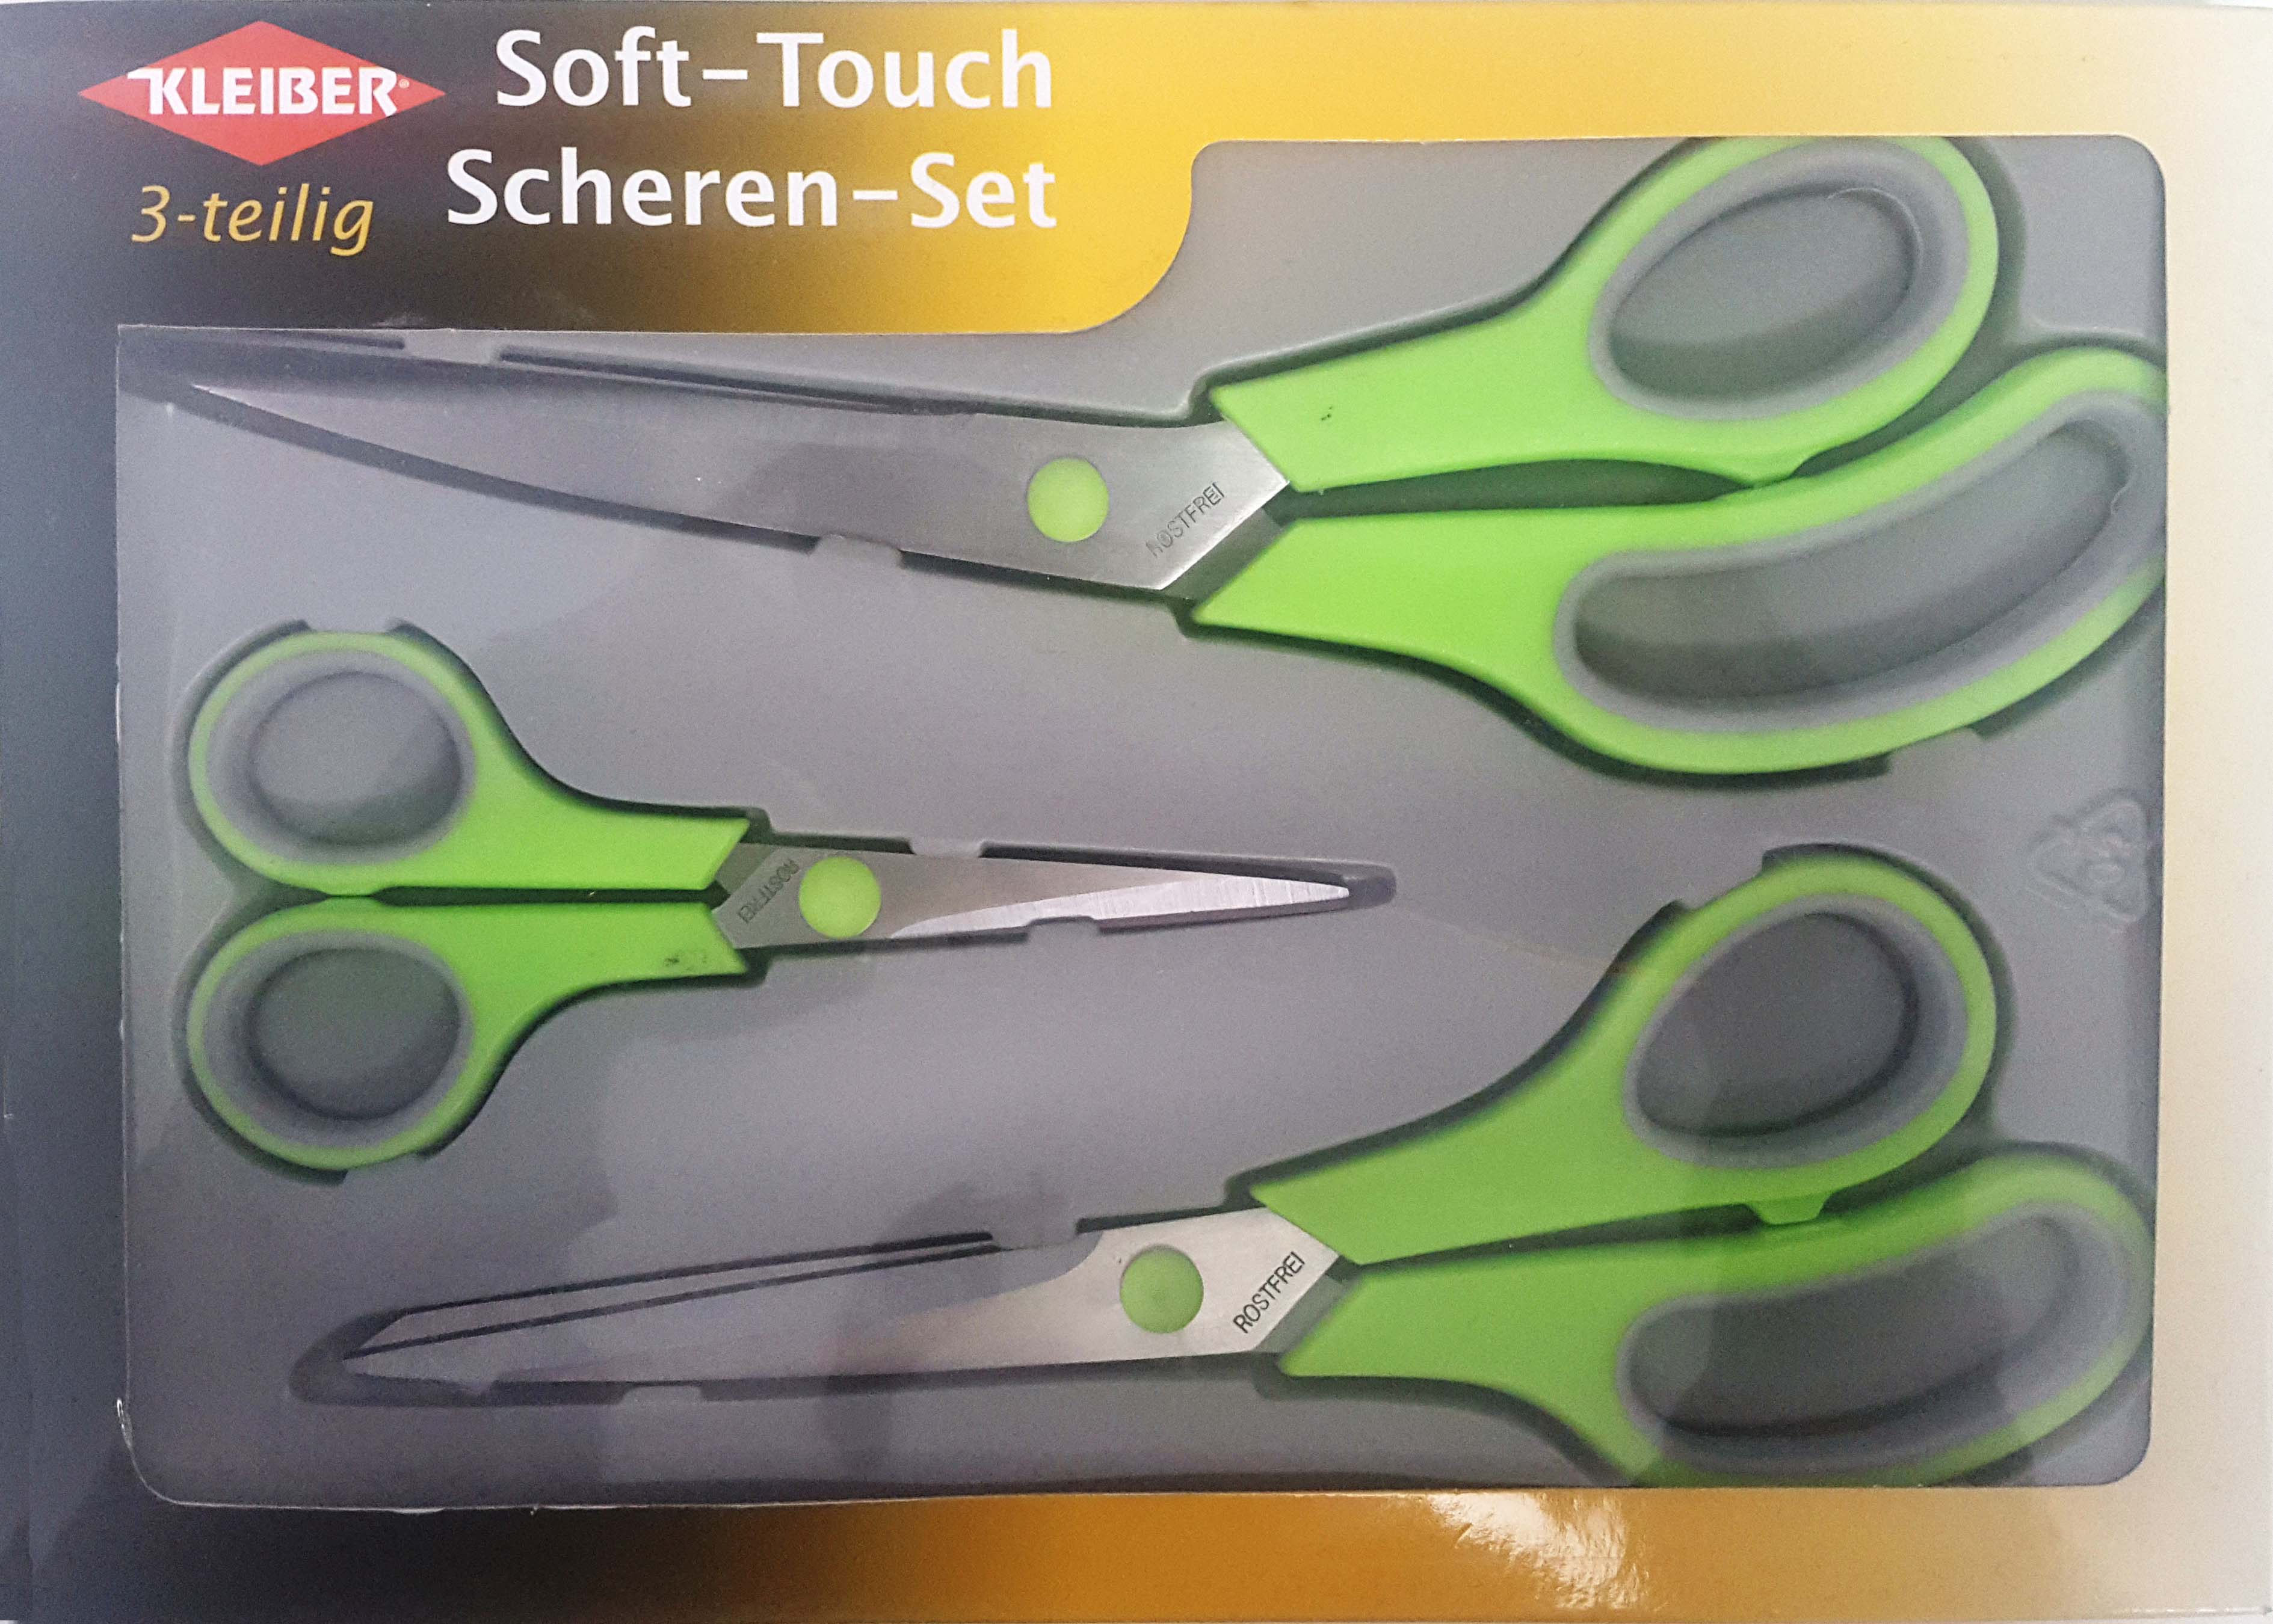 Soft Touch Scheren Scissor 3 piece Set